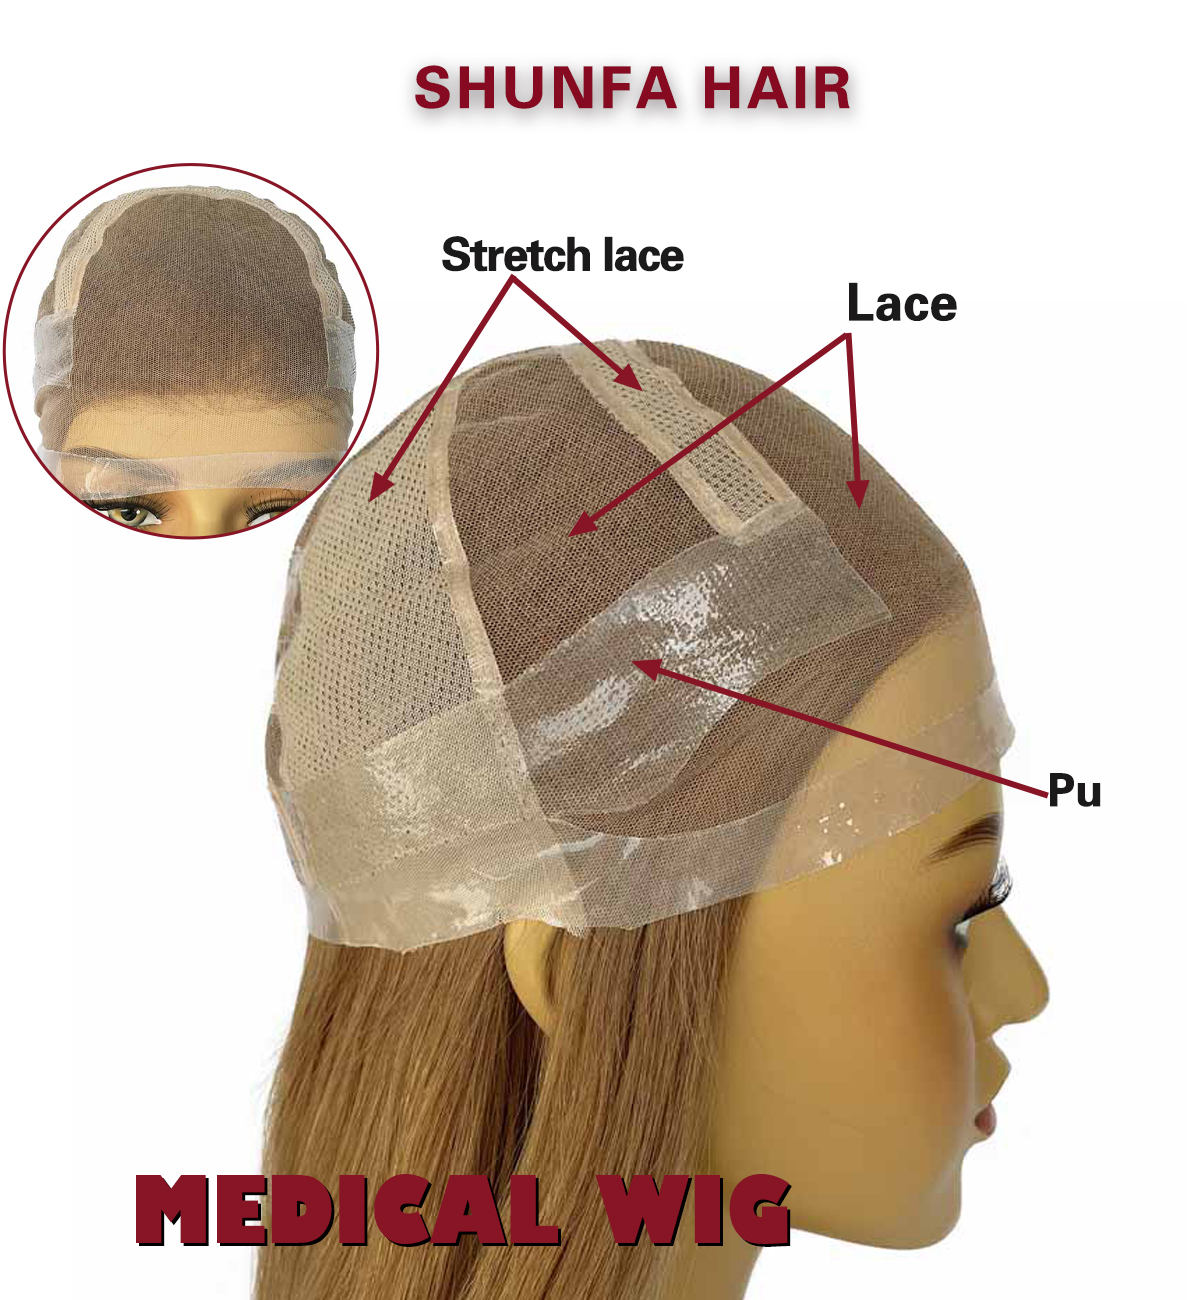 shunfa hair medical wig.png